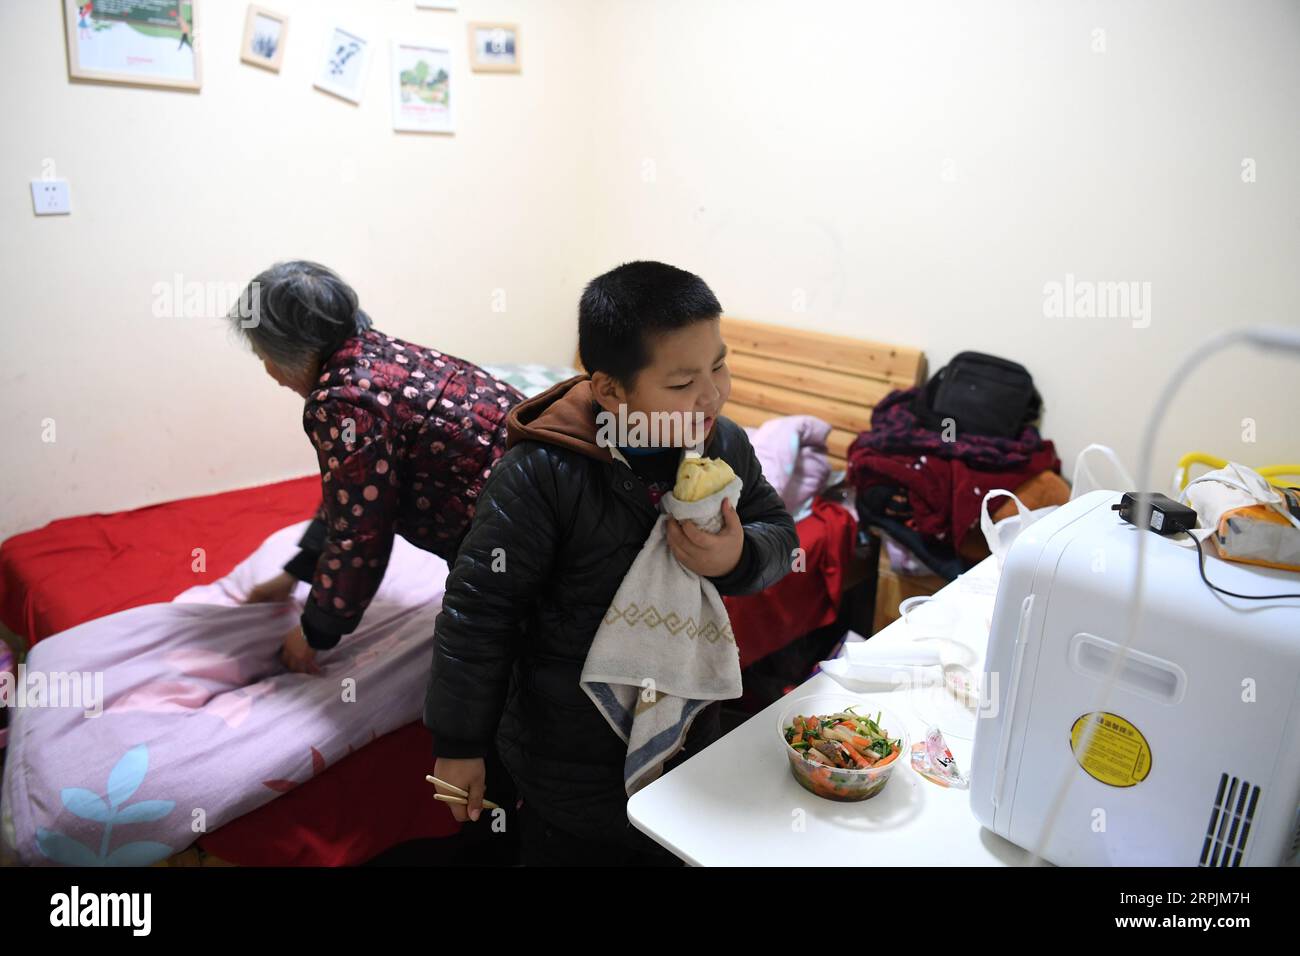 191214 -- HEFEI, 14 dicembre 2019 -- Un bambino ha un pasto in un ostello vicino al Children s Hospital di Hefei, provincia di Anhui, Cina orientale, 9 dicembre 2019. Vicino all'ospedale dei bambini di Hefei, c'è un edificio rosa a due piani, che viene affittato da un'organizzazione non governativa del benessere come ostello che fornisce camere gratuite a breve termine e auto-aiuto Love Kitchen per le famiglie colpite dalla povertà con bambini in cerca di cure mediche. Nella cucina dell'amore , acqua, elettricità, riso, farina, cereali, olio e utensili da cucina sono tutti disponibili gratuitamente. Al fine di rendere la Love Kitchen più scorrevole, genitori Foto Stock